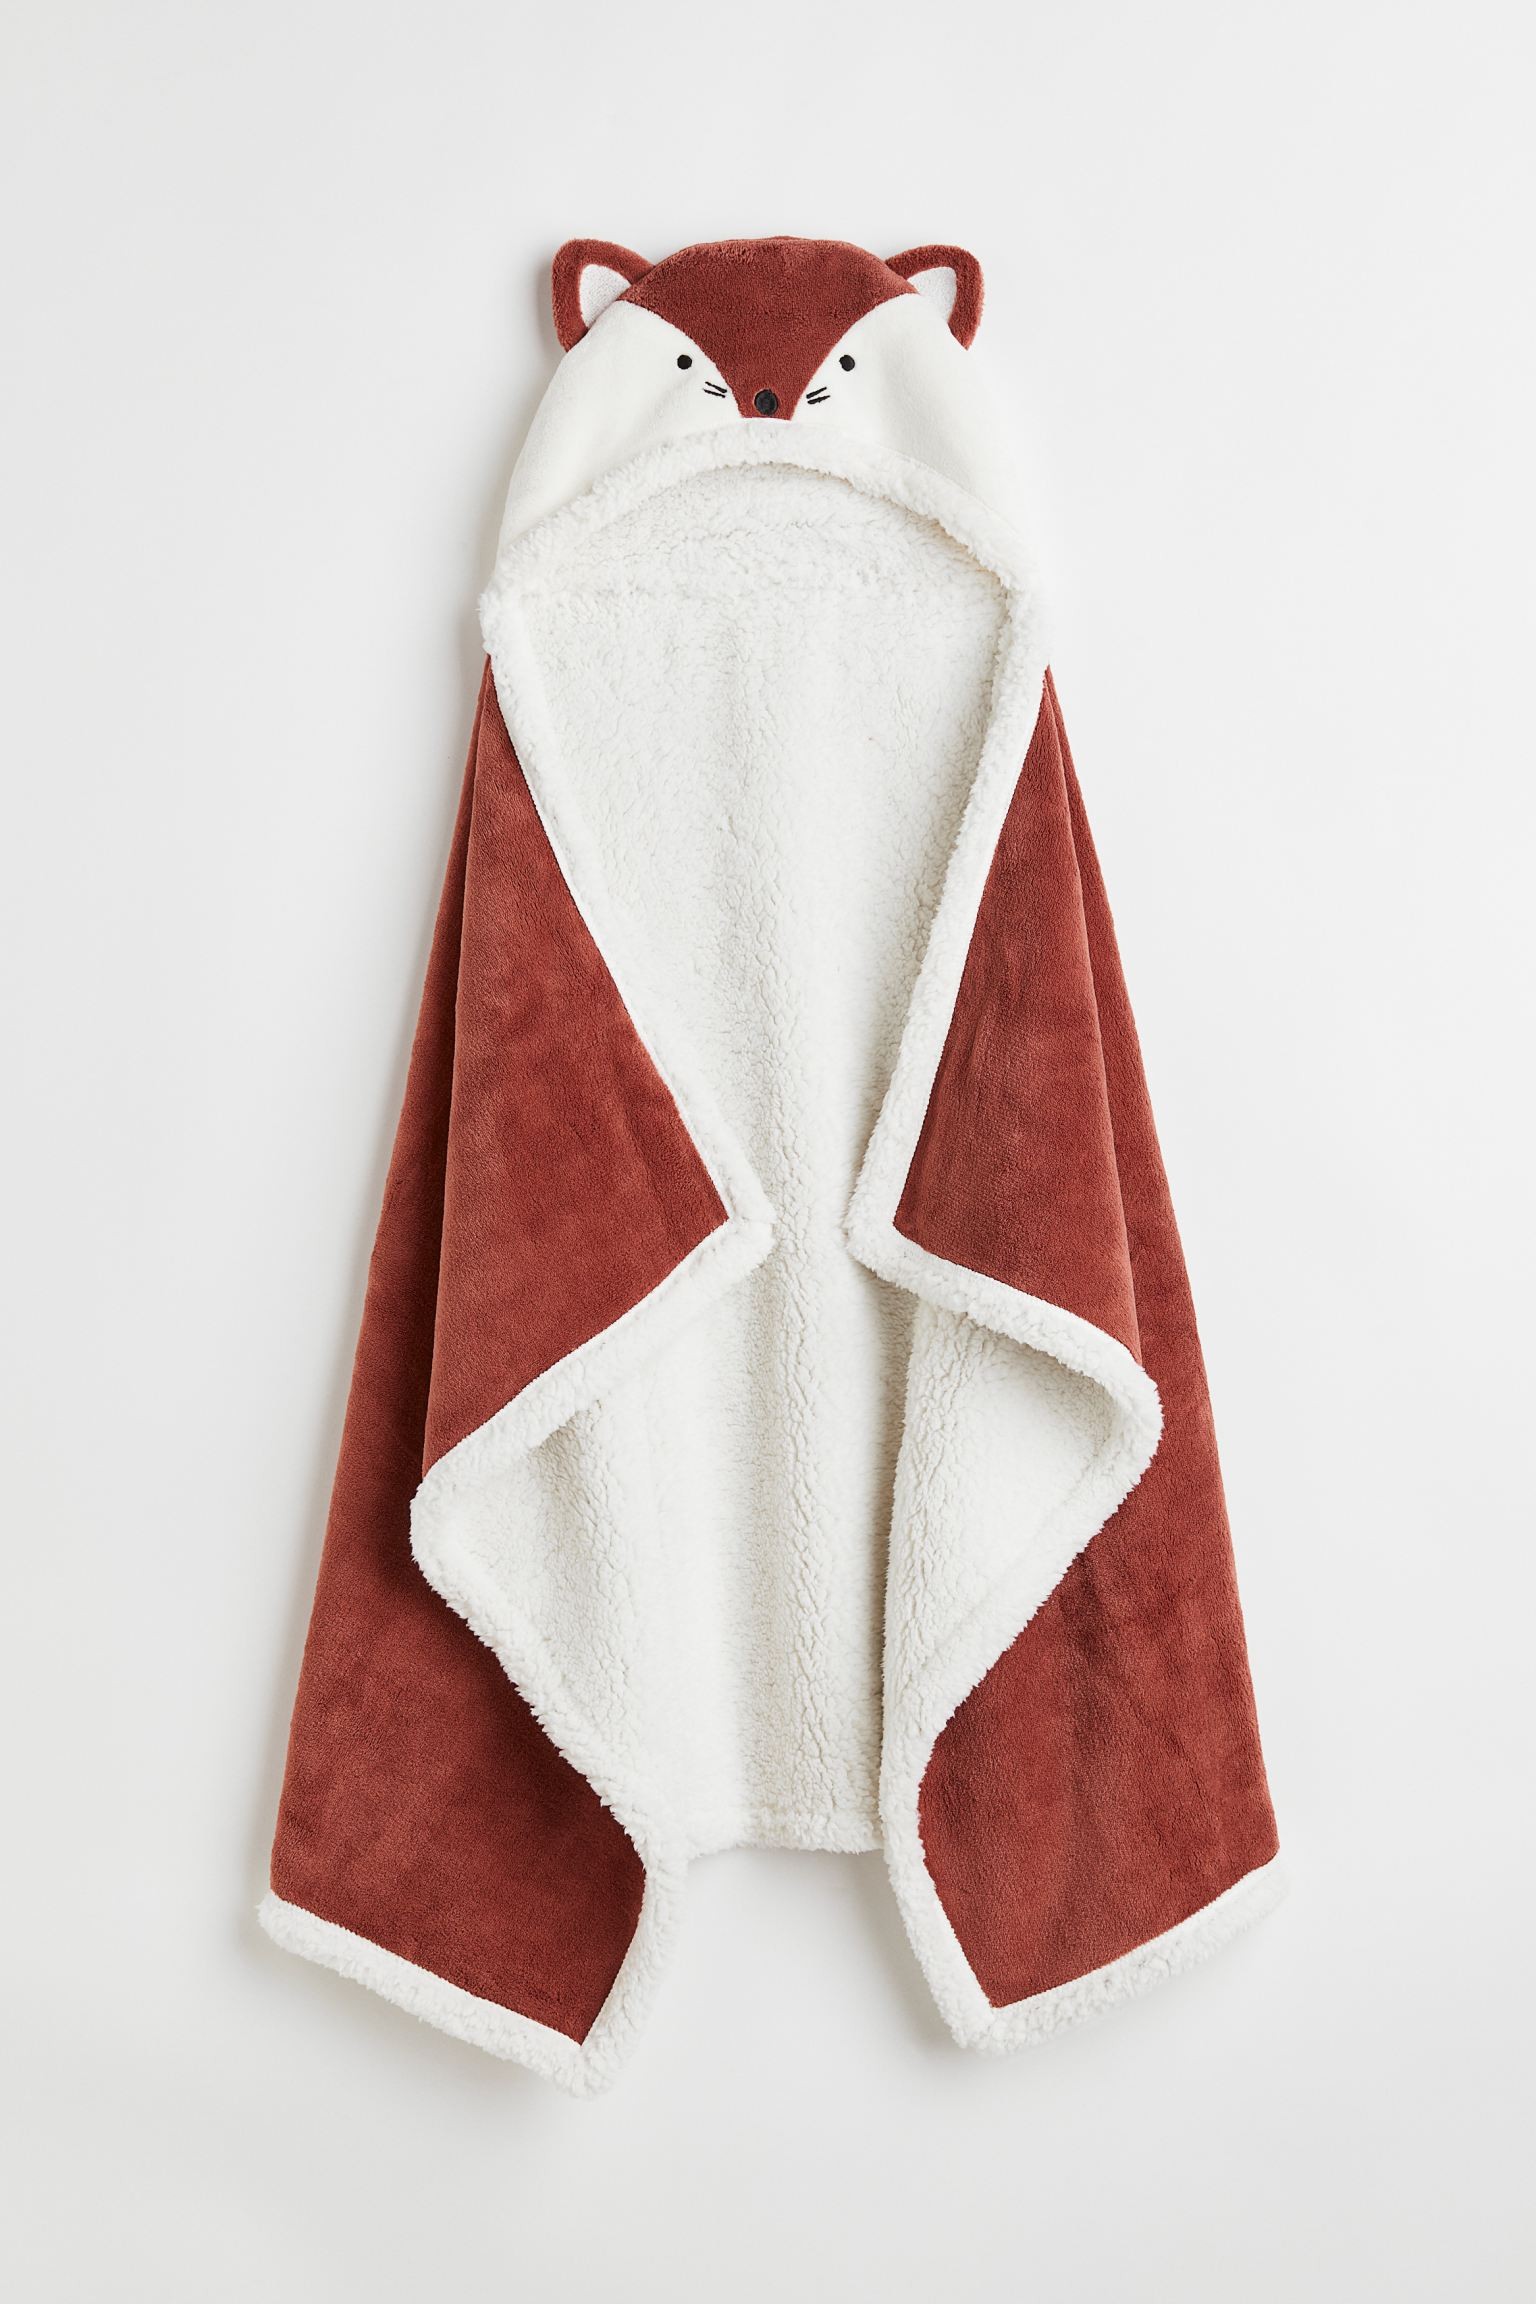 H&M Home Плюшевое одеяло с капюшоном, Красно-коричневый/Лисий, 70x130 1091456001 | 1091456001